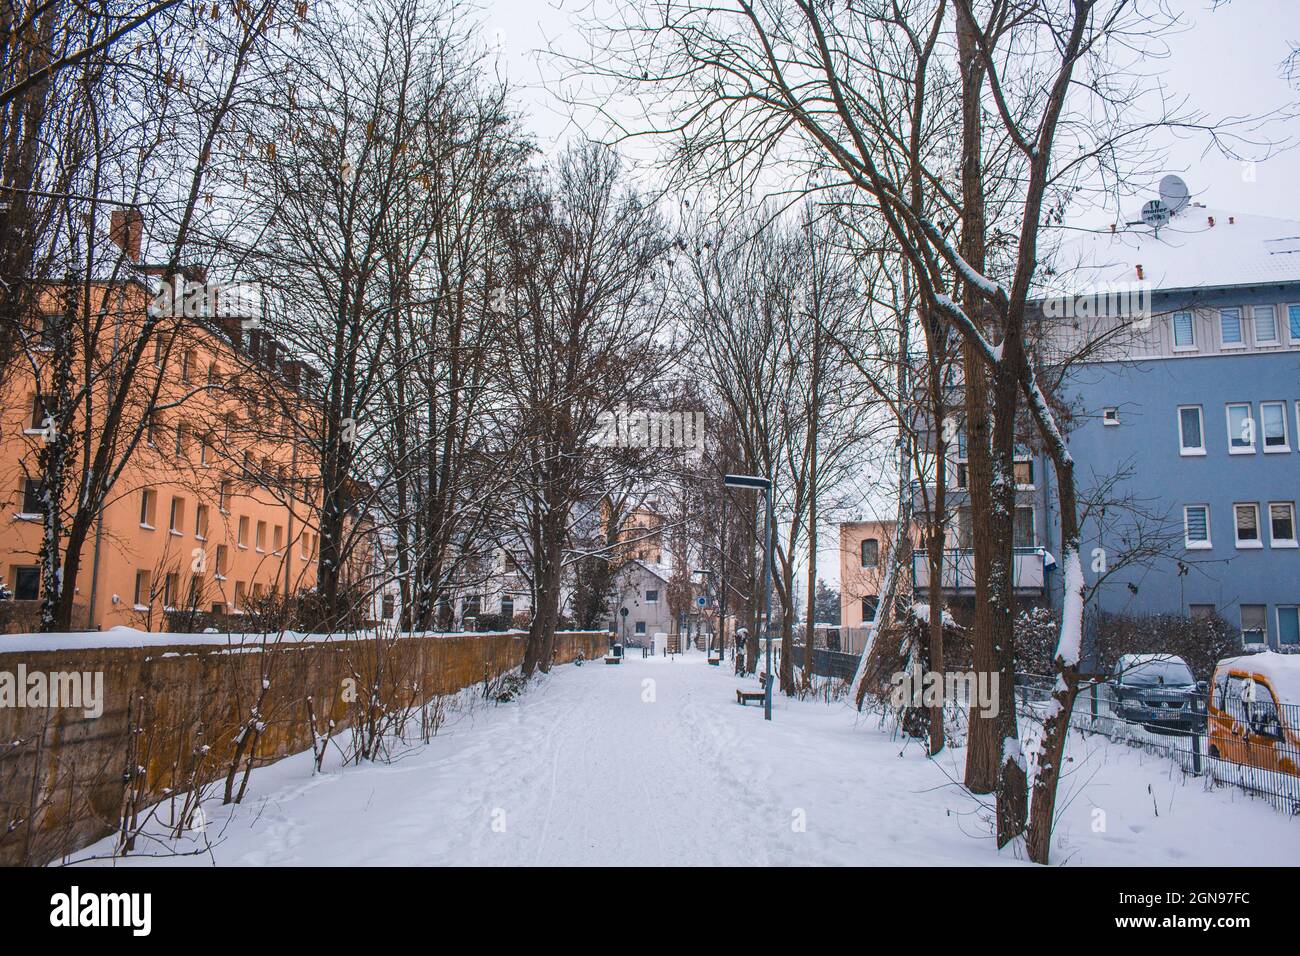 Paesaggio invernale nella città di Braunschweig, Germania. Strada pedonale e ciclabile coperta di neve chiamata Ringgleis. Stagione invernale con nevicate pesanti Foto Stock